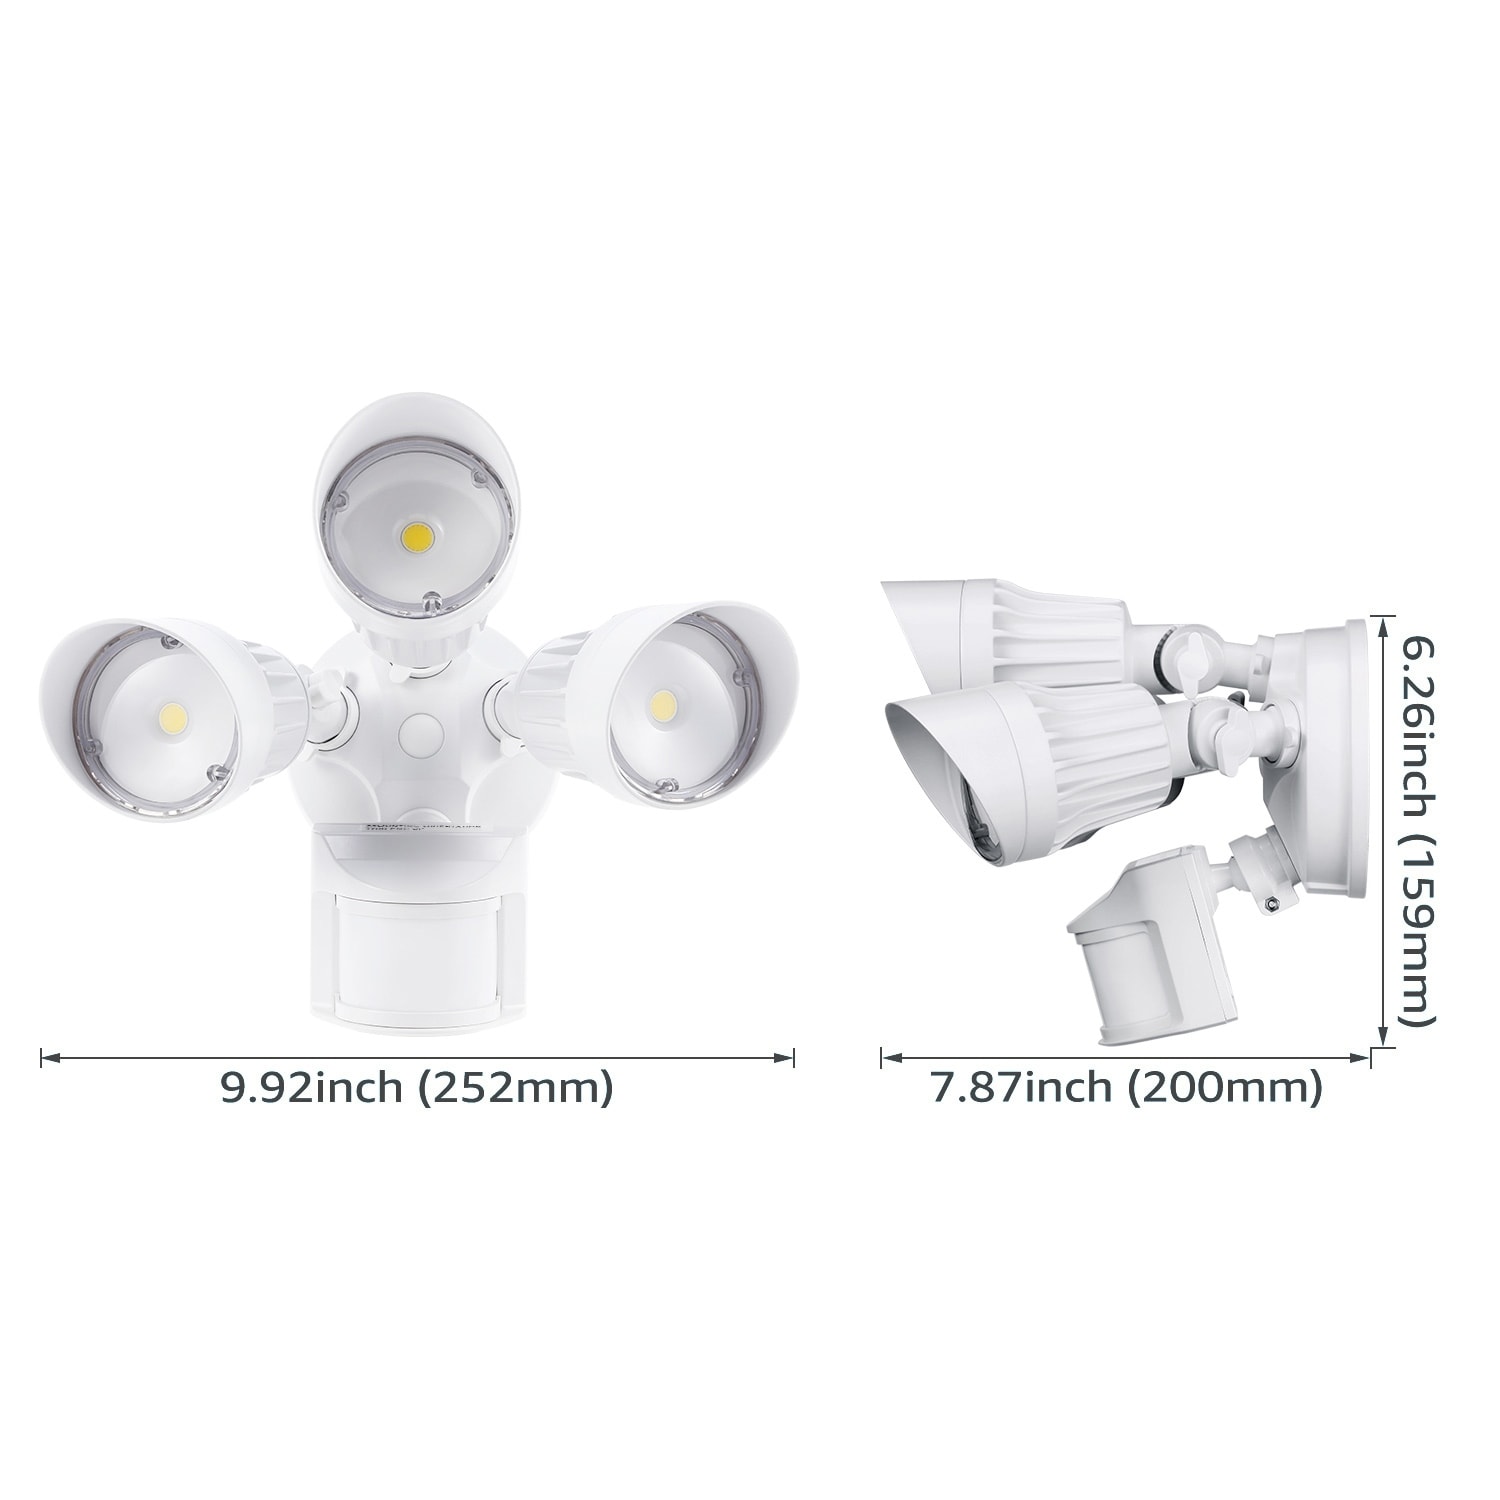 LED Security Lights, Adjustable Heads Motion Sensor Flood Light, Modes,  ETL Listed Bed Bath  Beyond 29032782